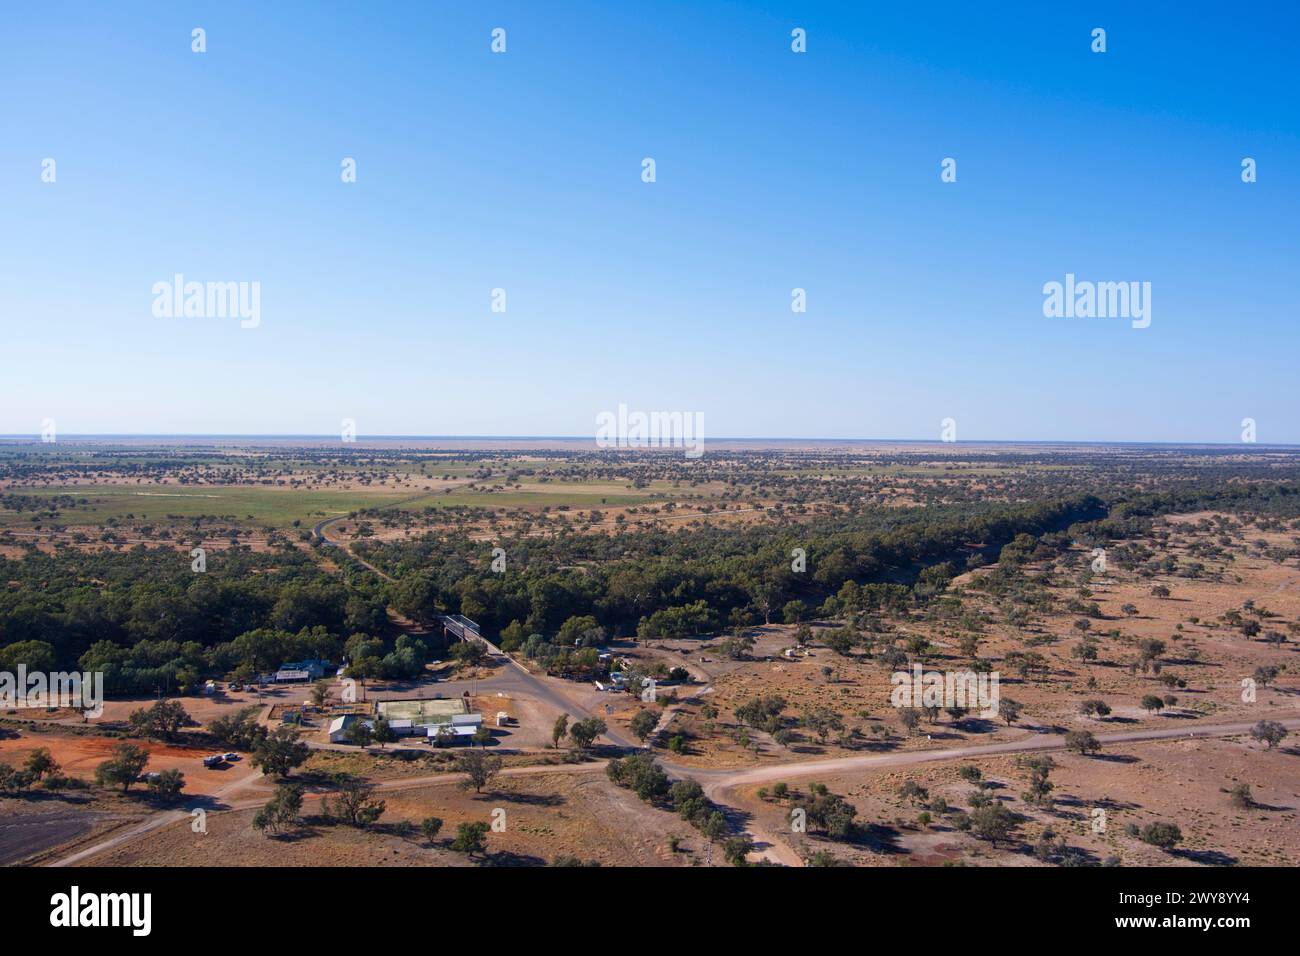 Aérienne du village riverain isolé de Tilpa sur les plaines inondables de la rivière Darling Nouvelle-Galles du Sud Australie Banque D'Images